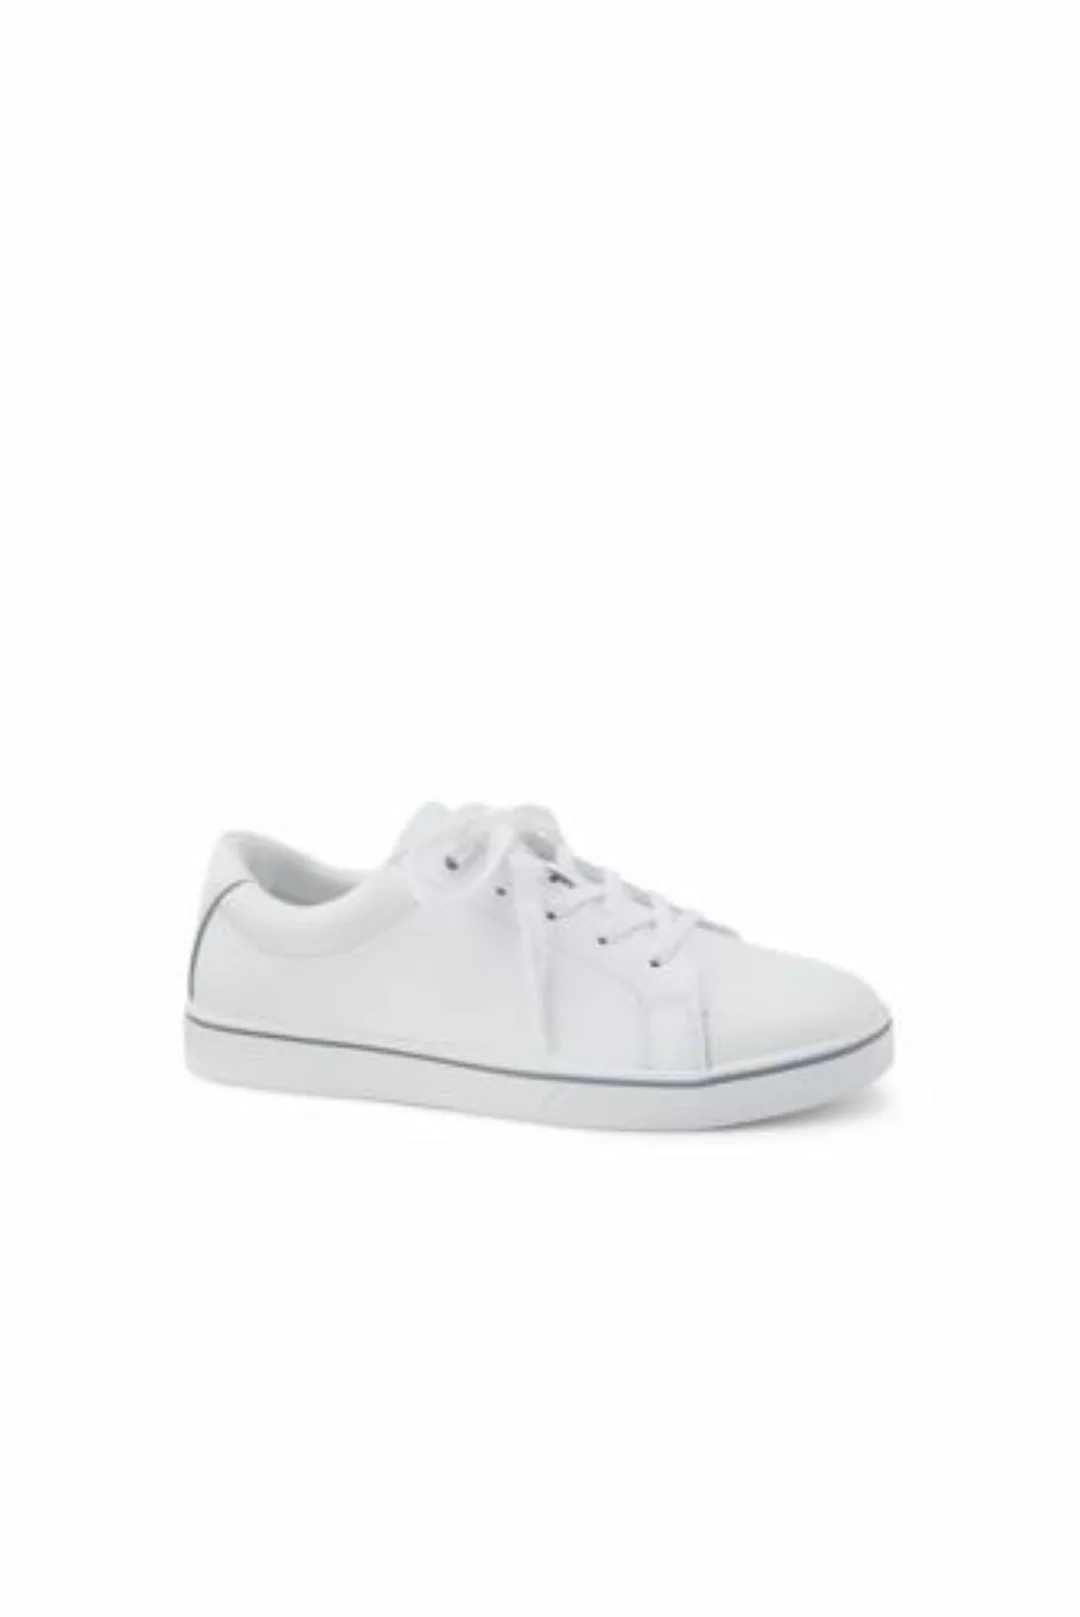 Sneaker, Damen, Größe: 41 Normal, Weiß, Leder, by Lands' End, Weiß Leder günstig online kaufen